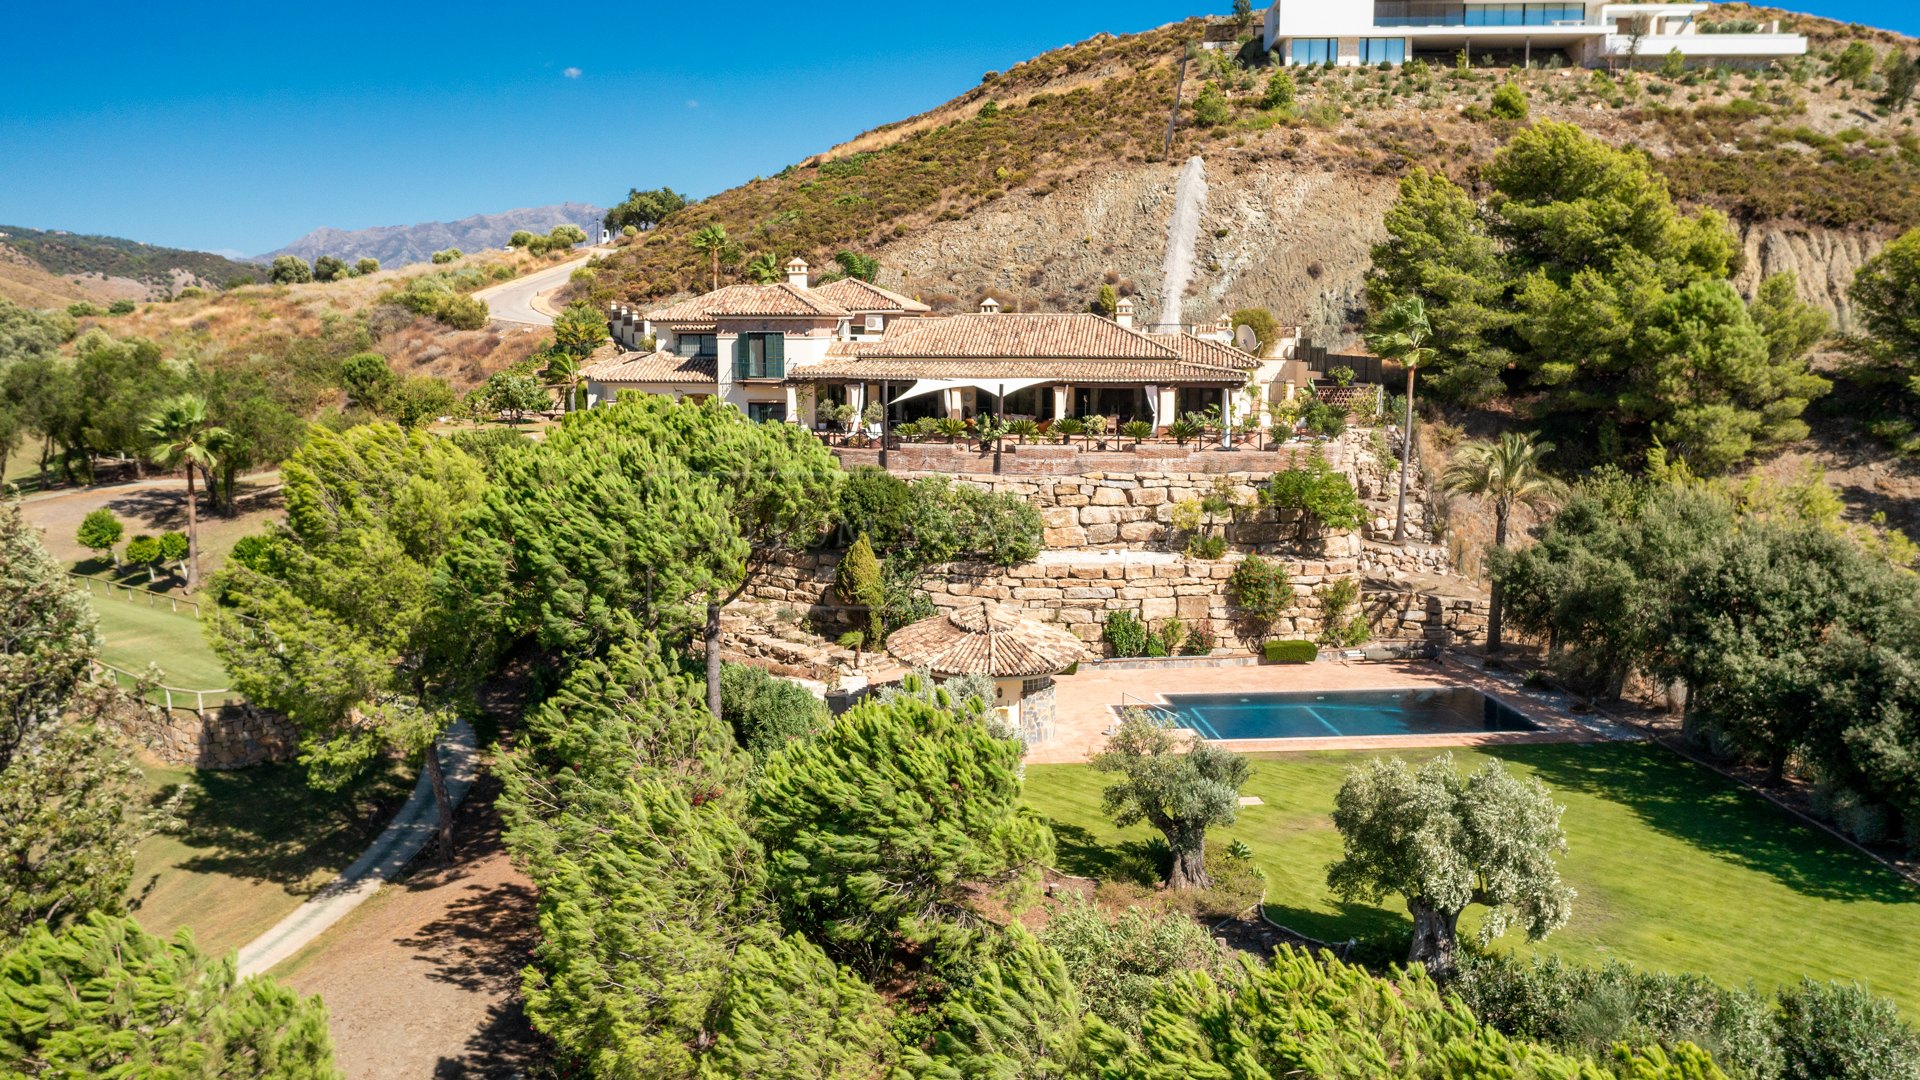 Villa de estilo andaluz en Marbella Club Golf Resort